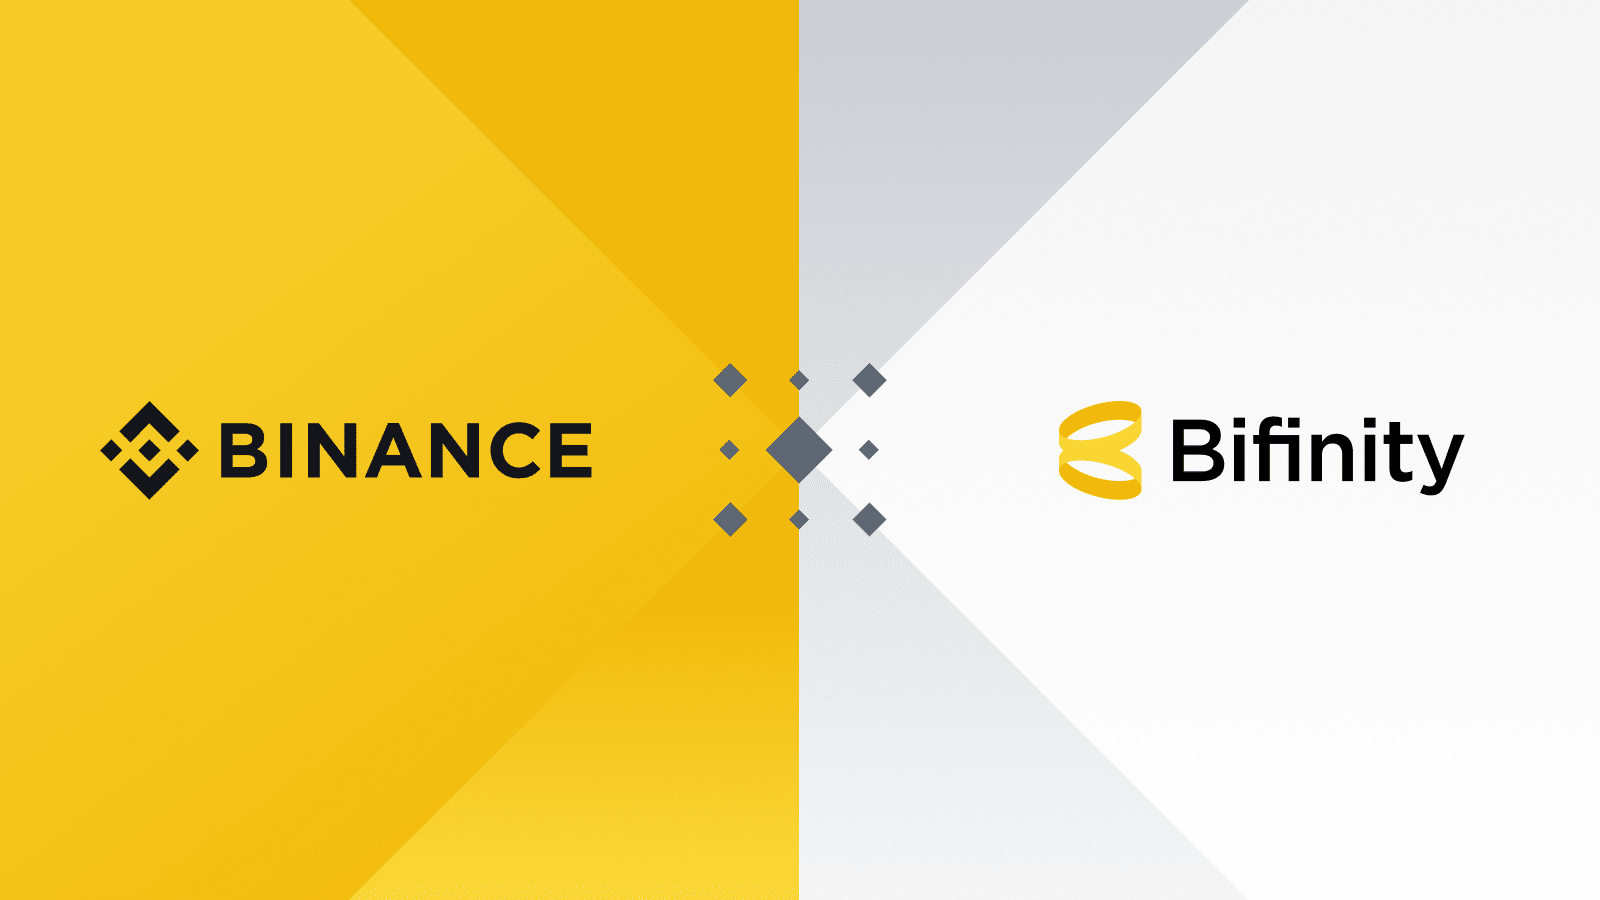 Binance anunciou nesta segunda-feira (07) o lançamento de sua mais nova plataforma, a Bifinity, seu provedor de pagamentos fiat-to-crypto